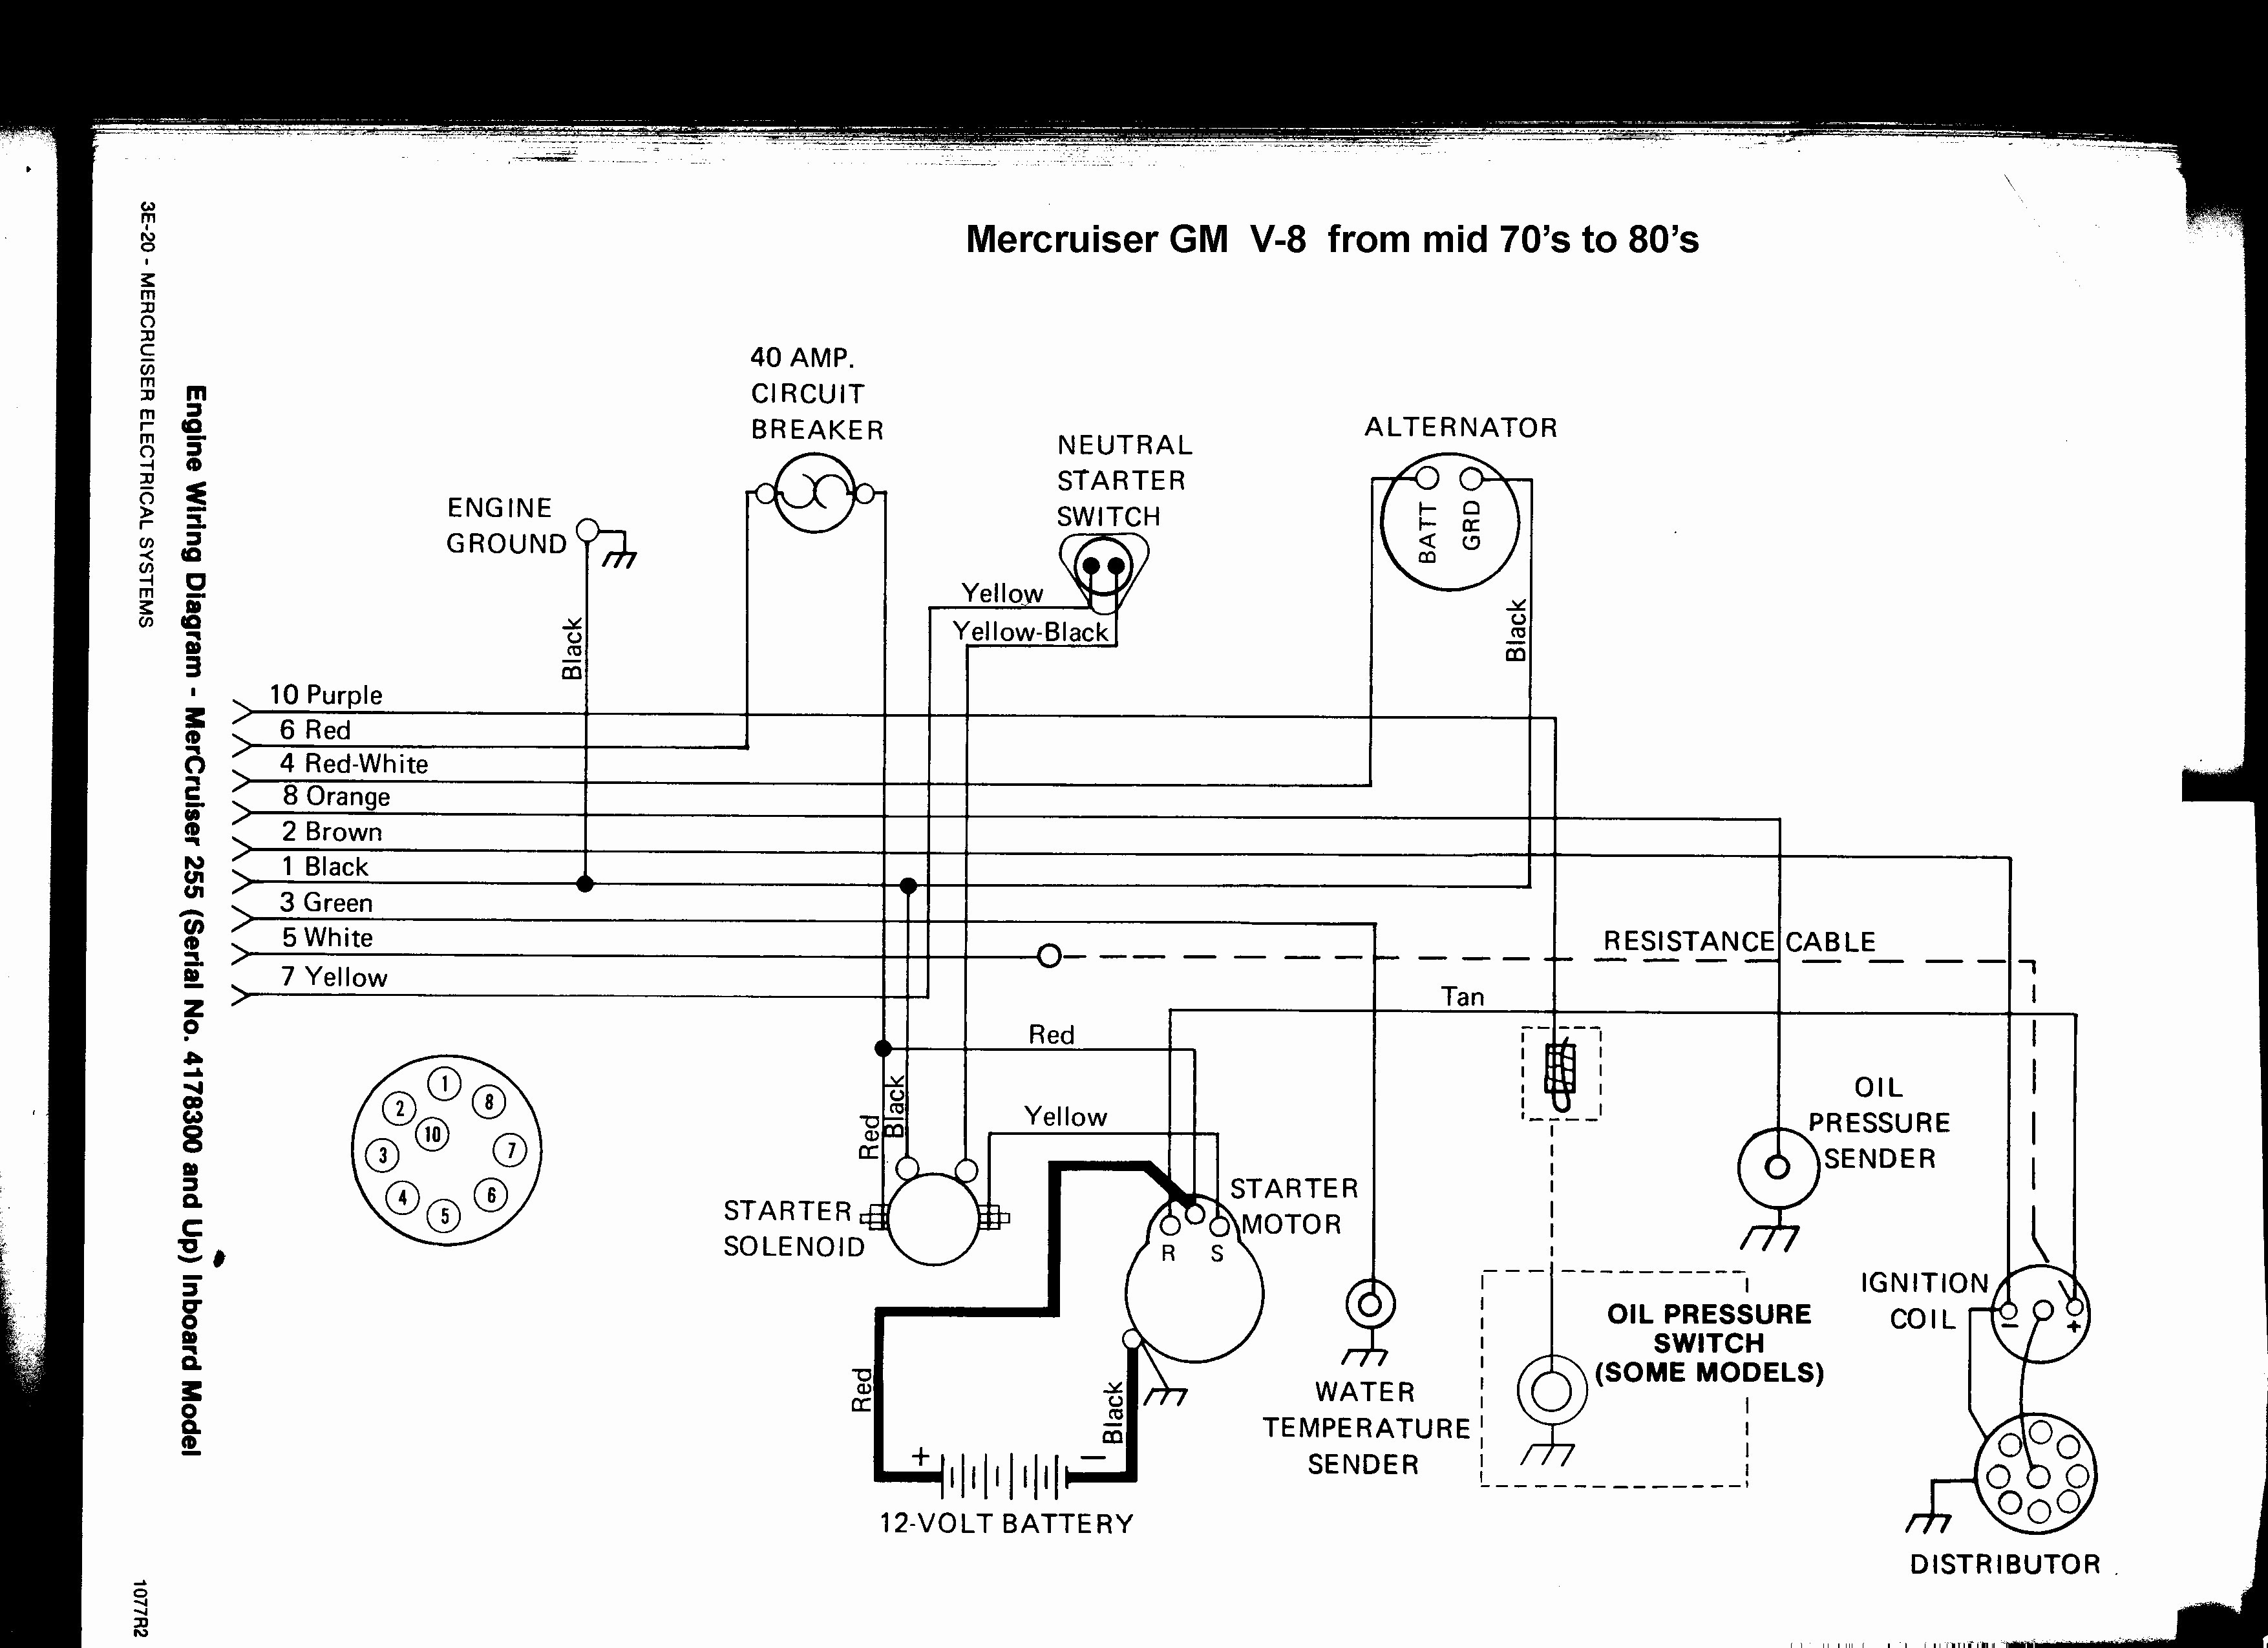 Mercruiser 5 7 Engine Wiring Diagram - Wiring Diagram and Schematic